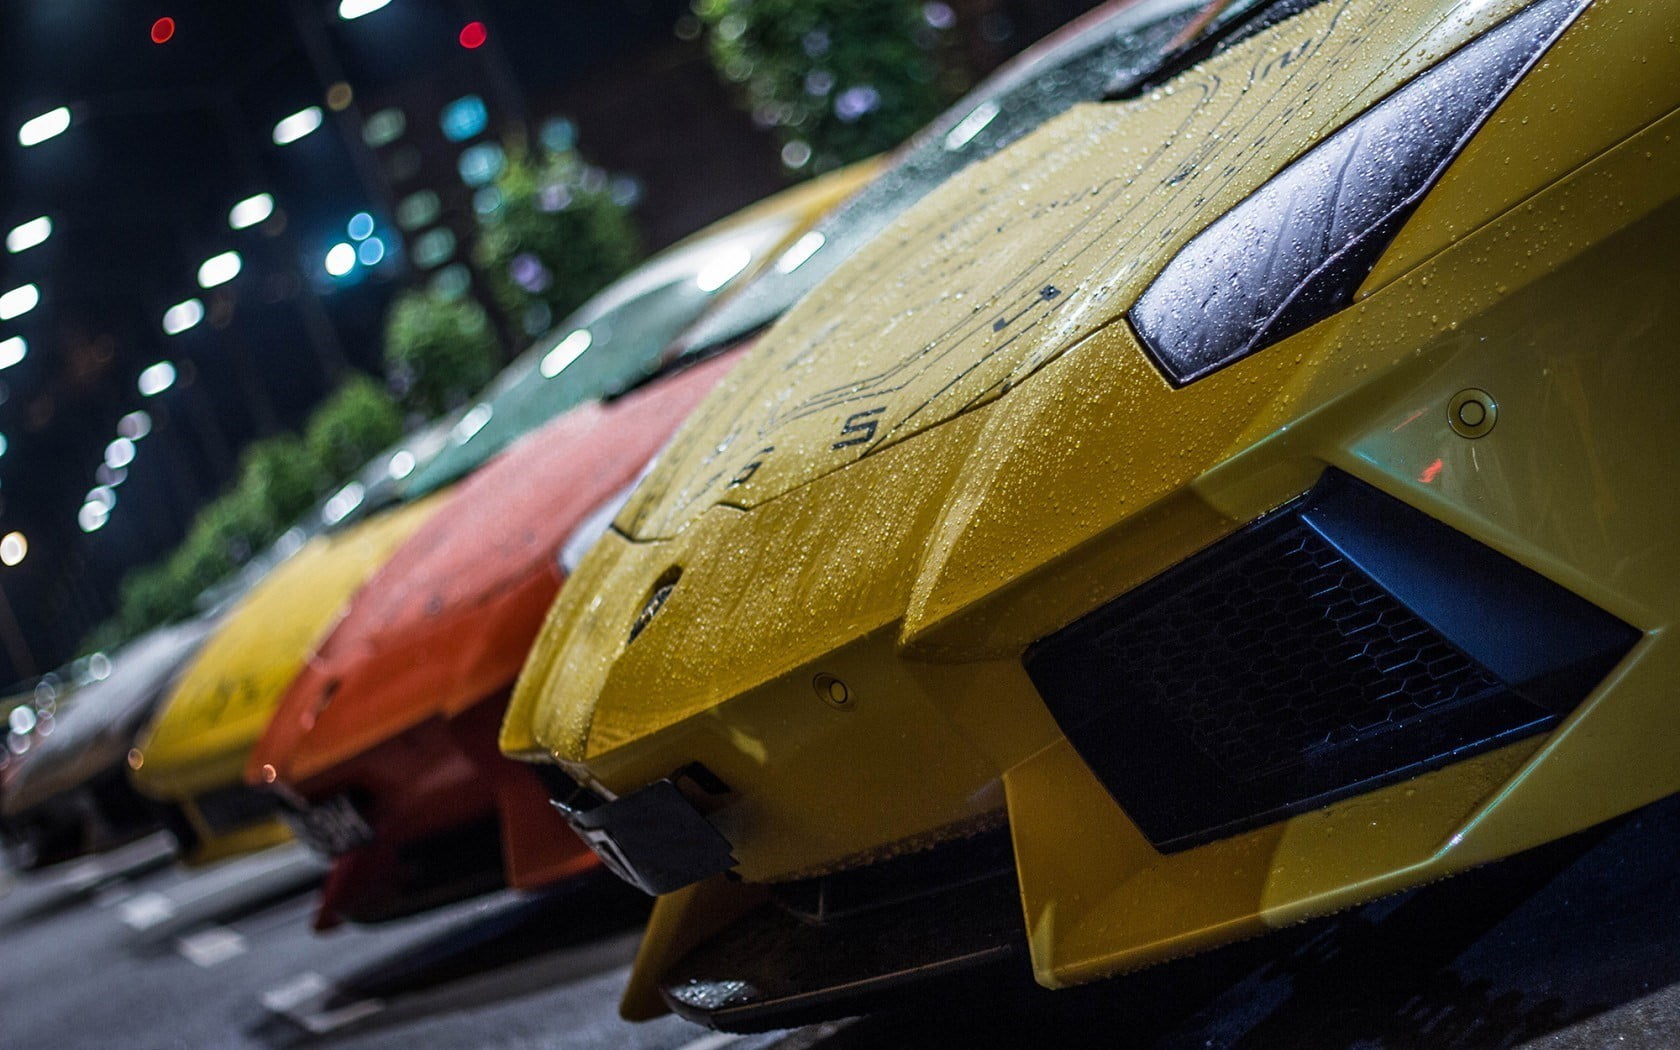 Yellow Lamborghini Aventador, Lamborghini, rain, water drops, yellow